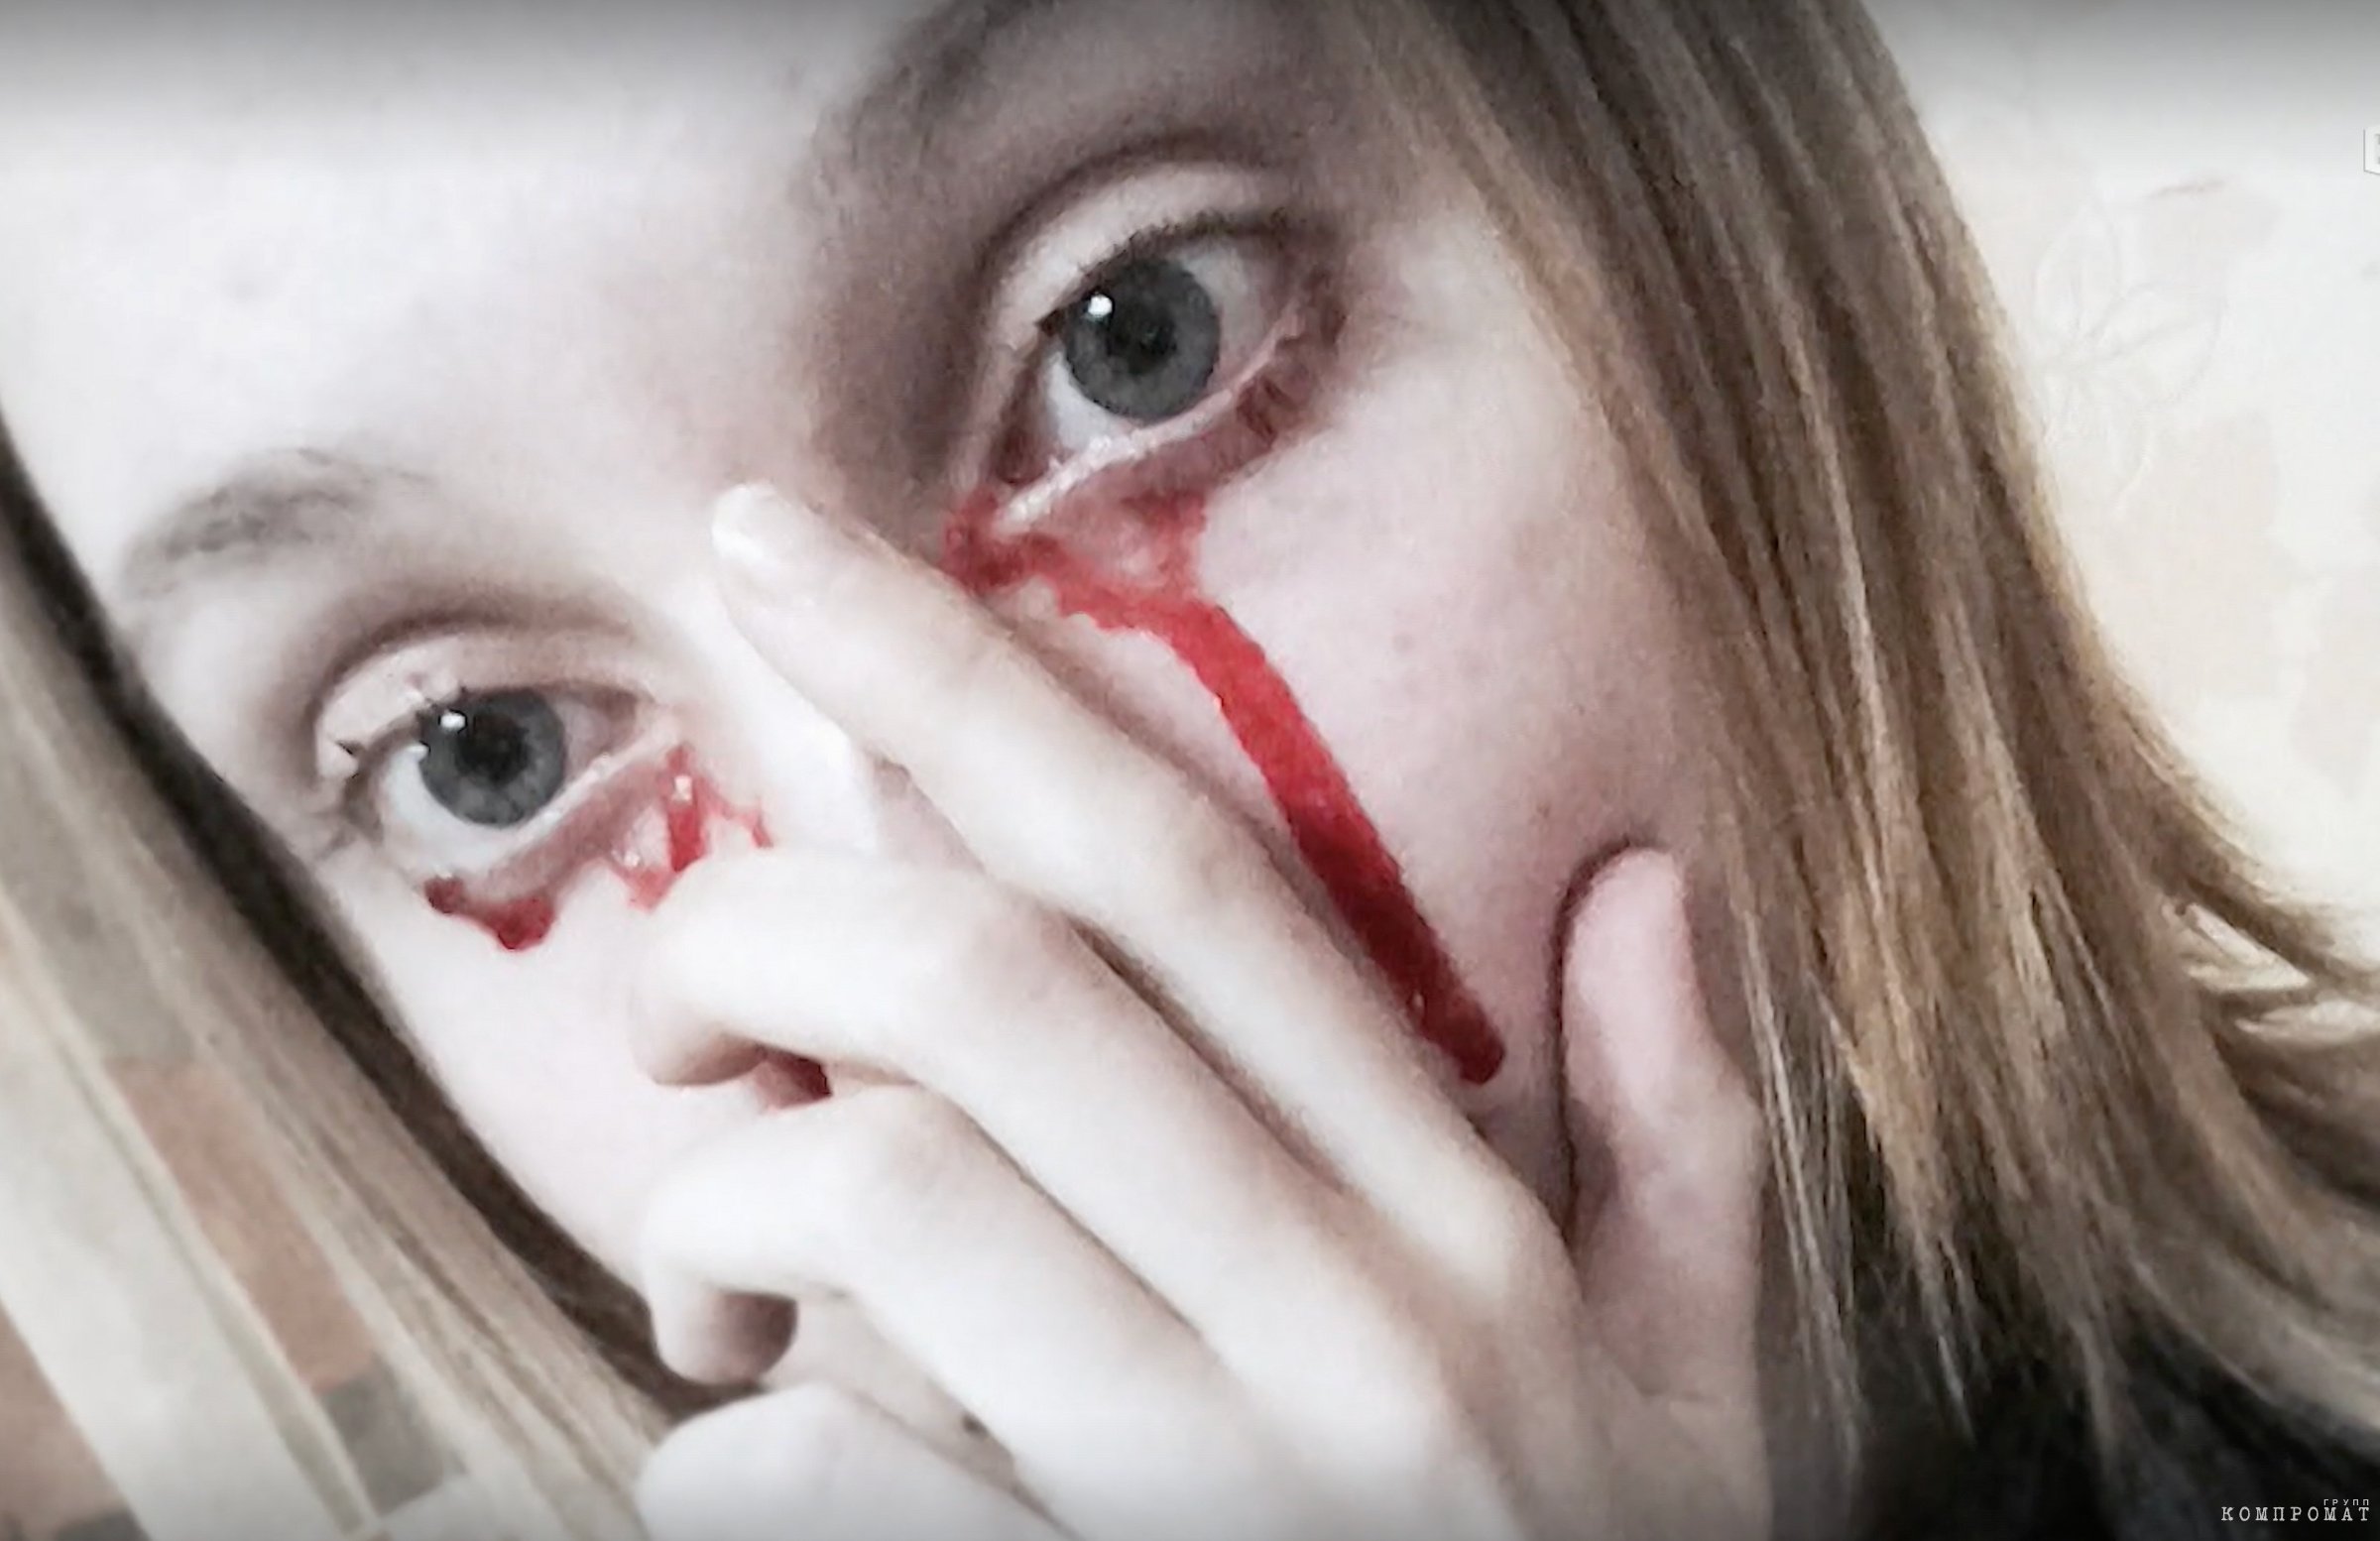 На фотографии видно, что "кровь" под правым глазом девушки, похоже, не вытекала из слёзного канала, а выглядит так, будто была нанесена искусственно.